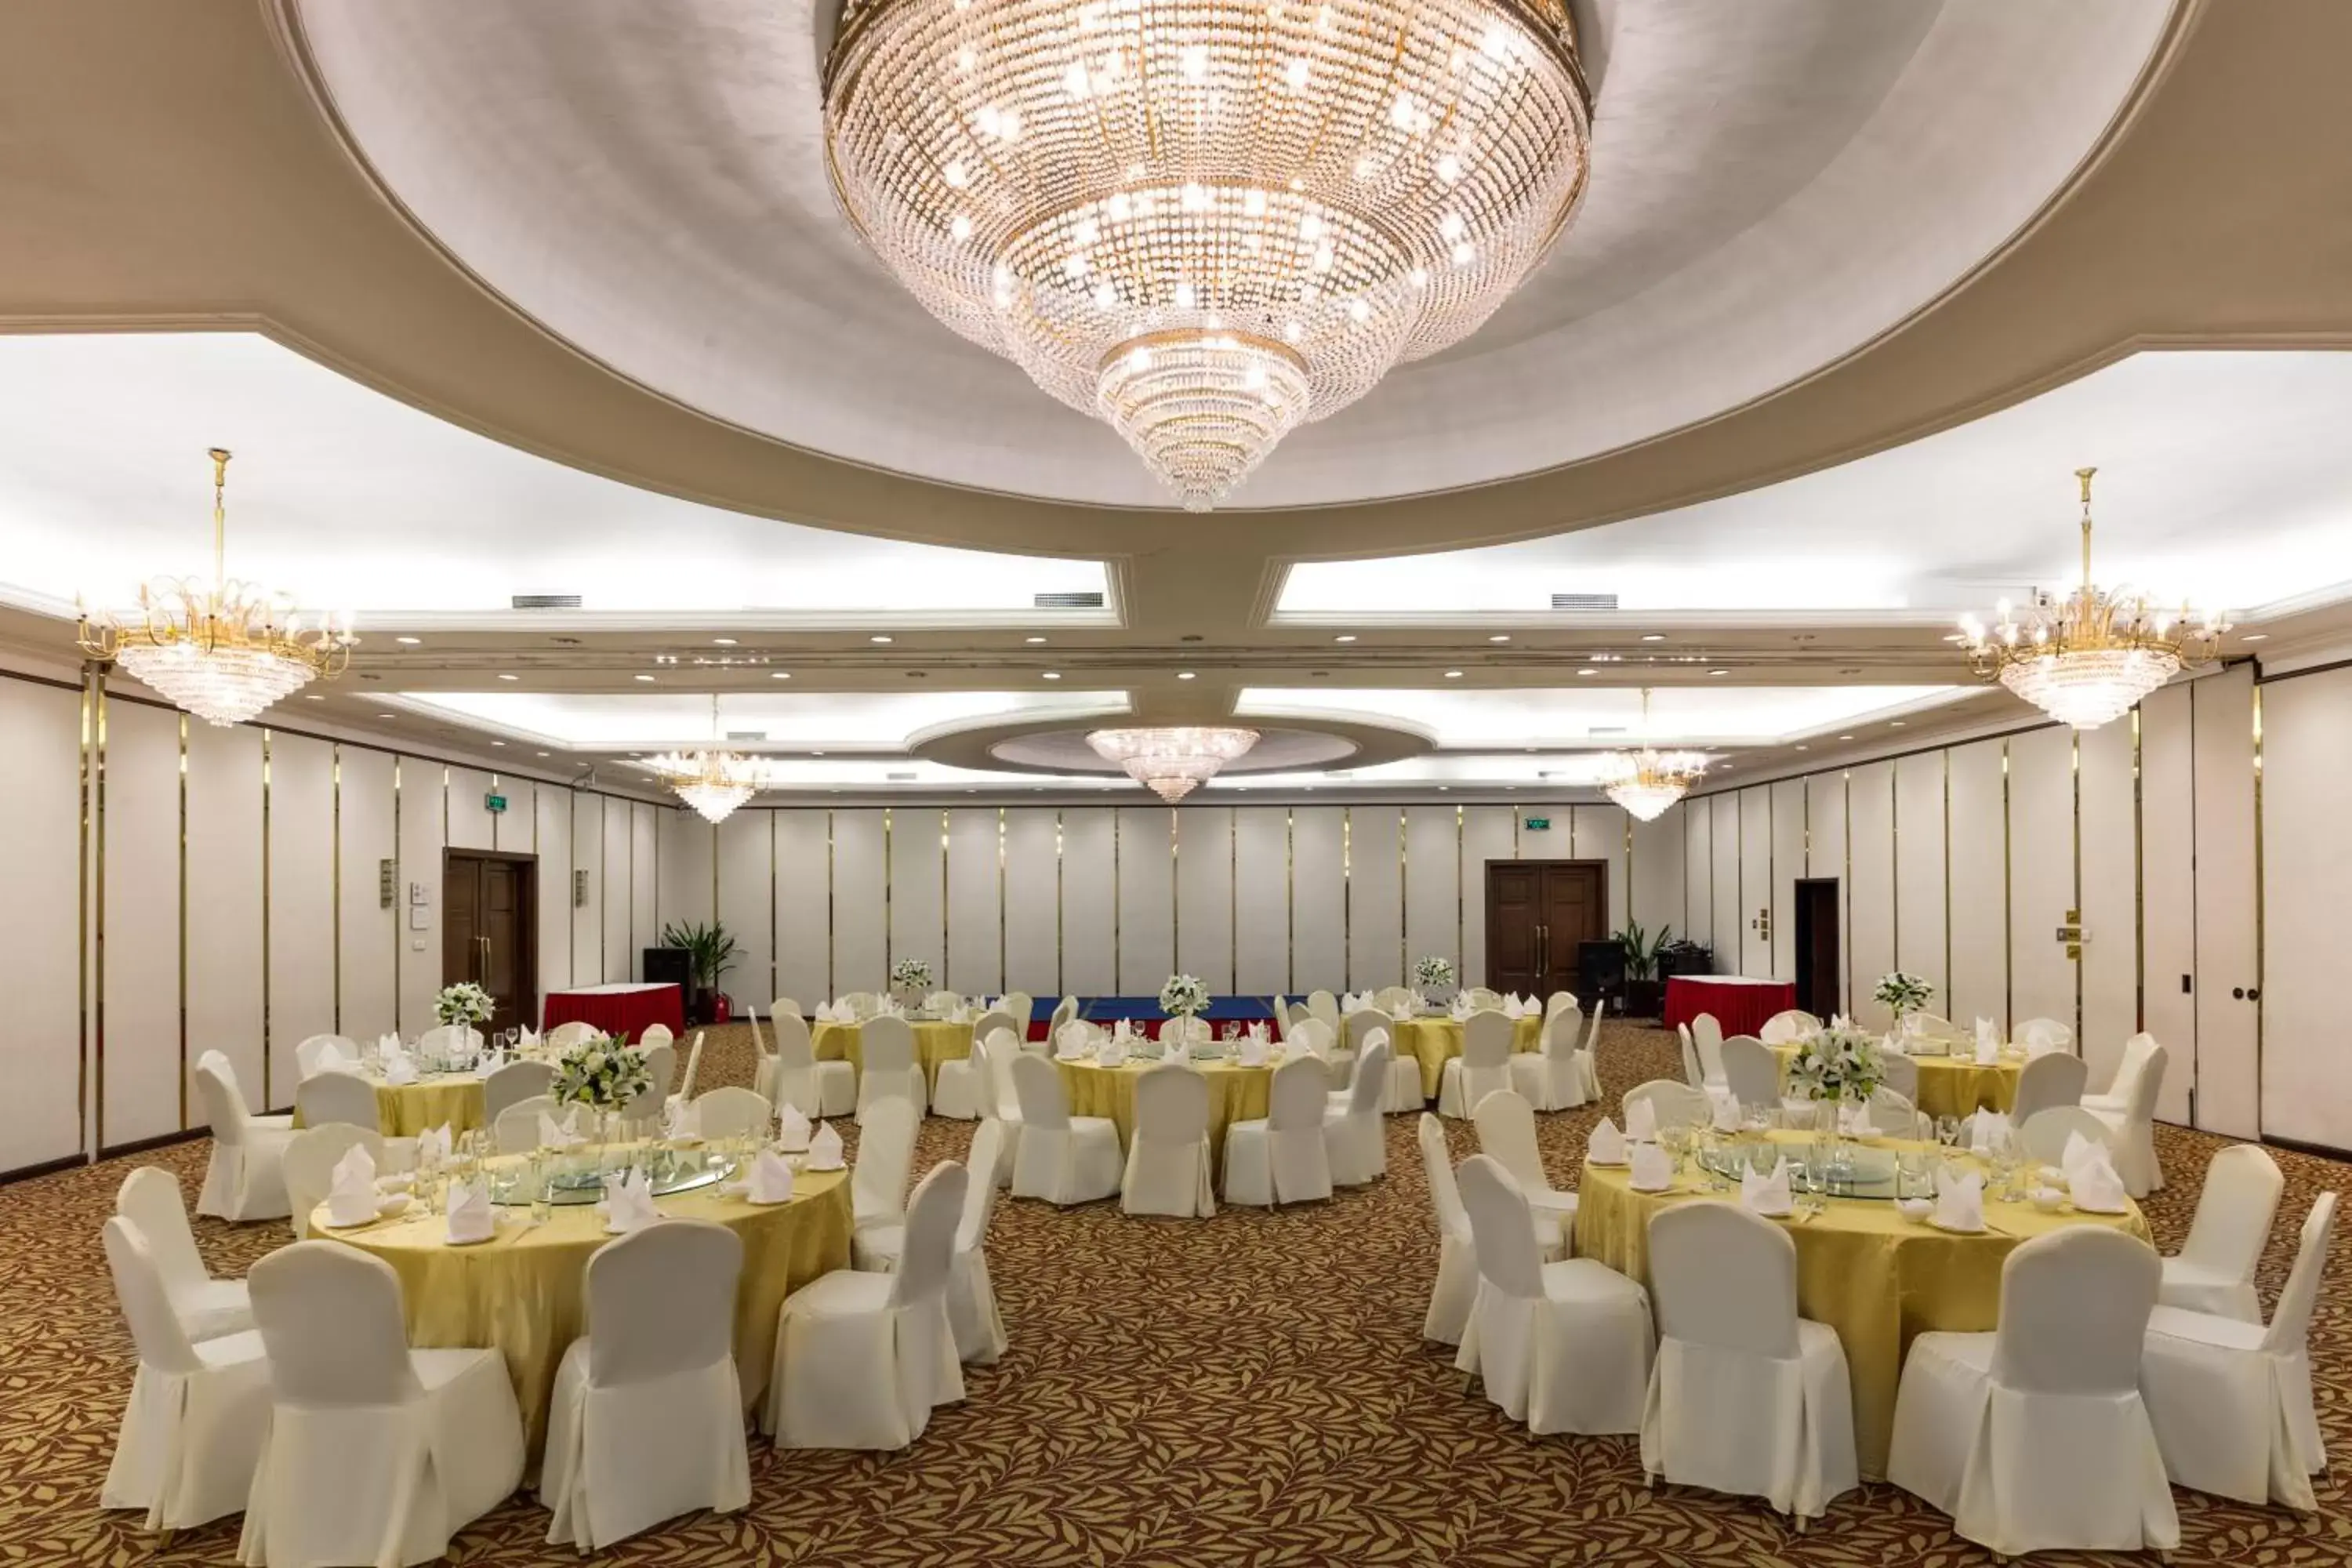 Banquet/Function facilities, Banquet Facilities in Guo Ji Yi Yuan Hotel